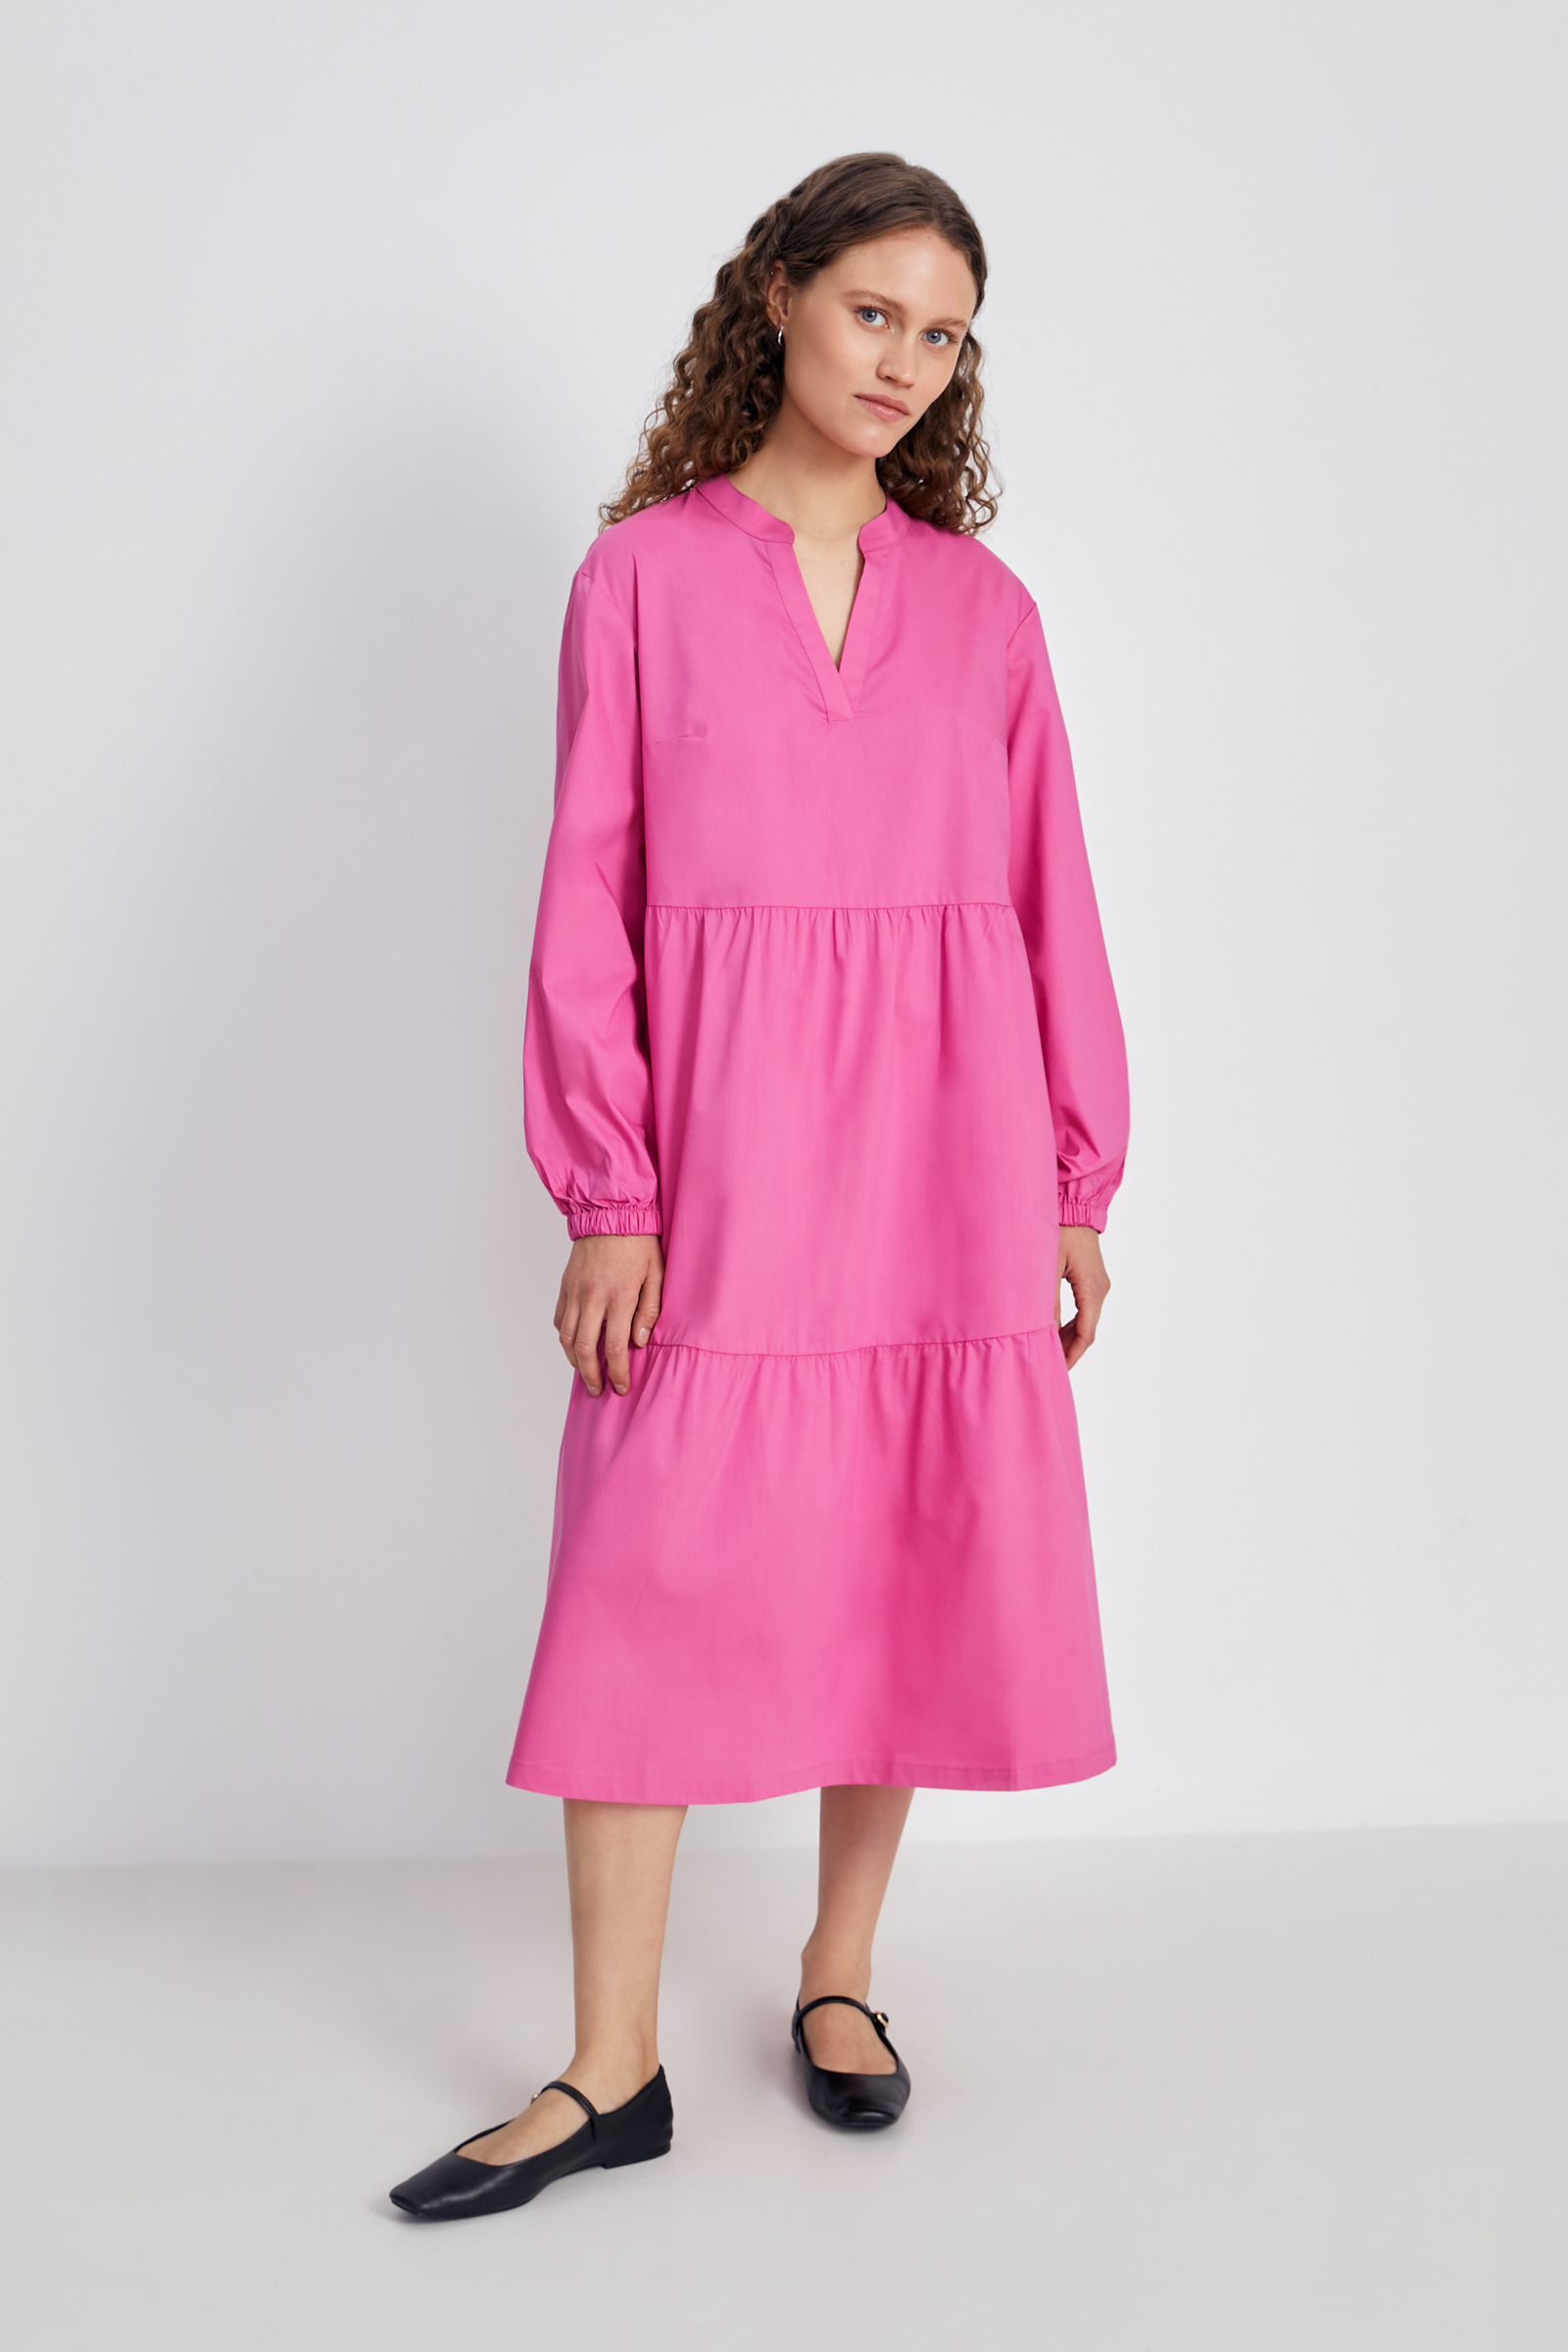 Платье женское Finn Flare FSC110216 розовое XL